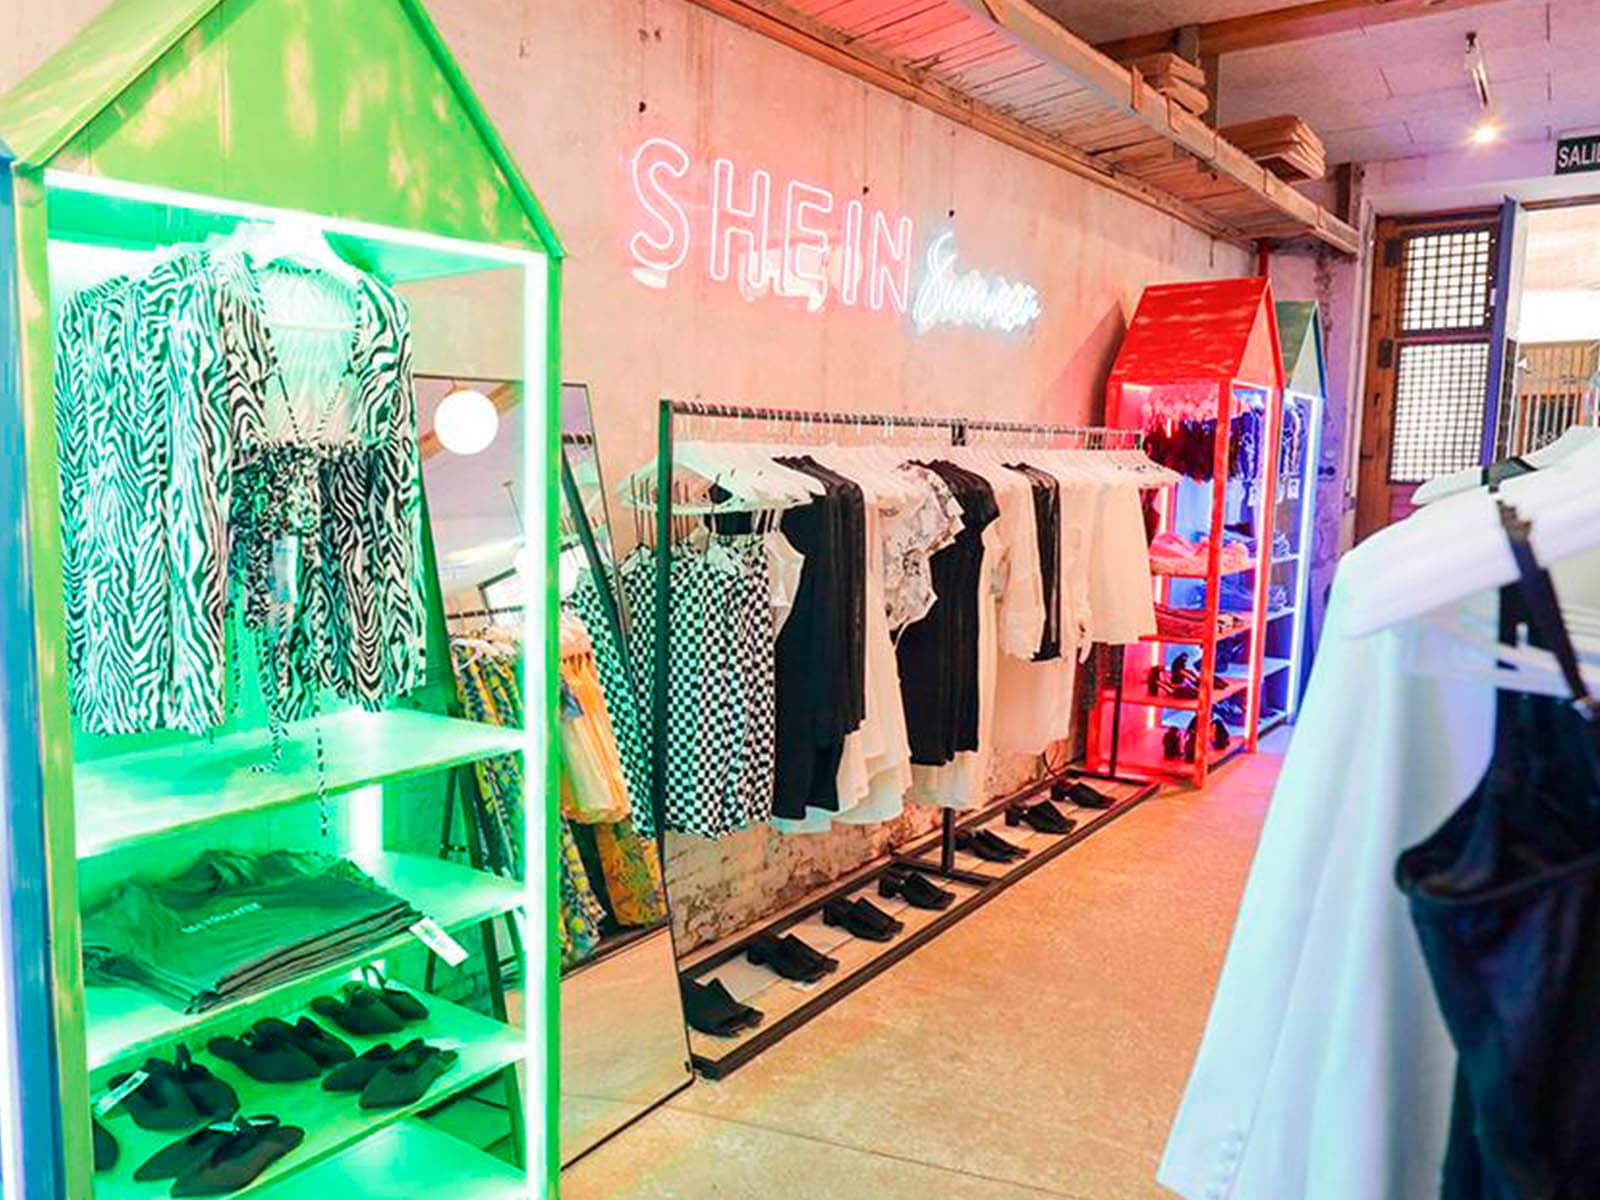 journalist Uitmaken Gelach Shein has decided to open a shop in Barcelona - HIGHXTAR.